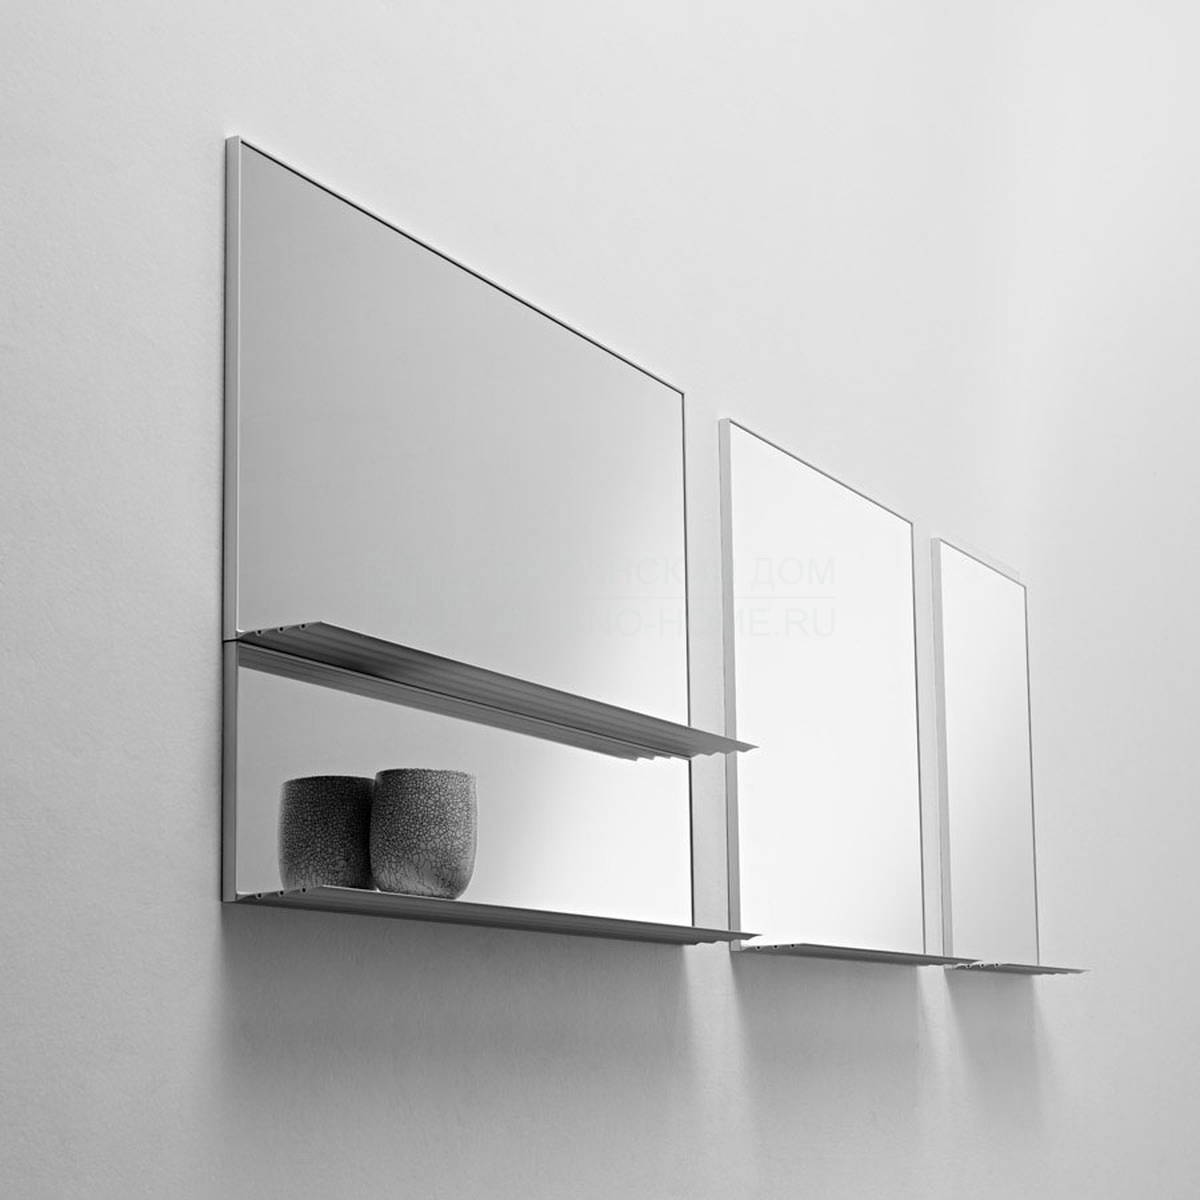 Зеркало напольное Gill/mirror из Италии фабрики HORM